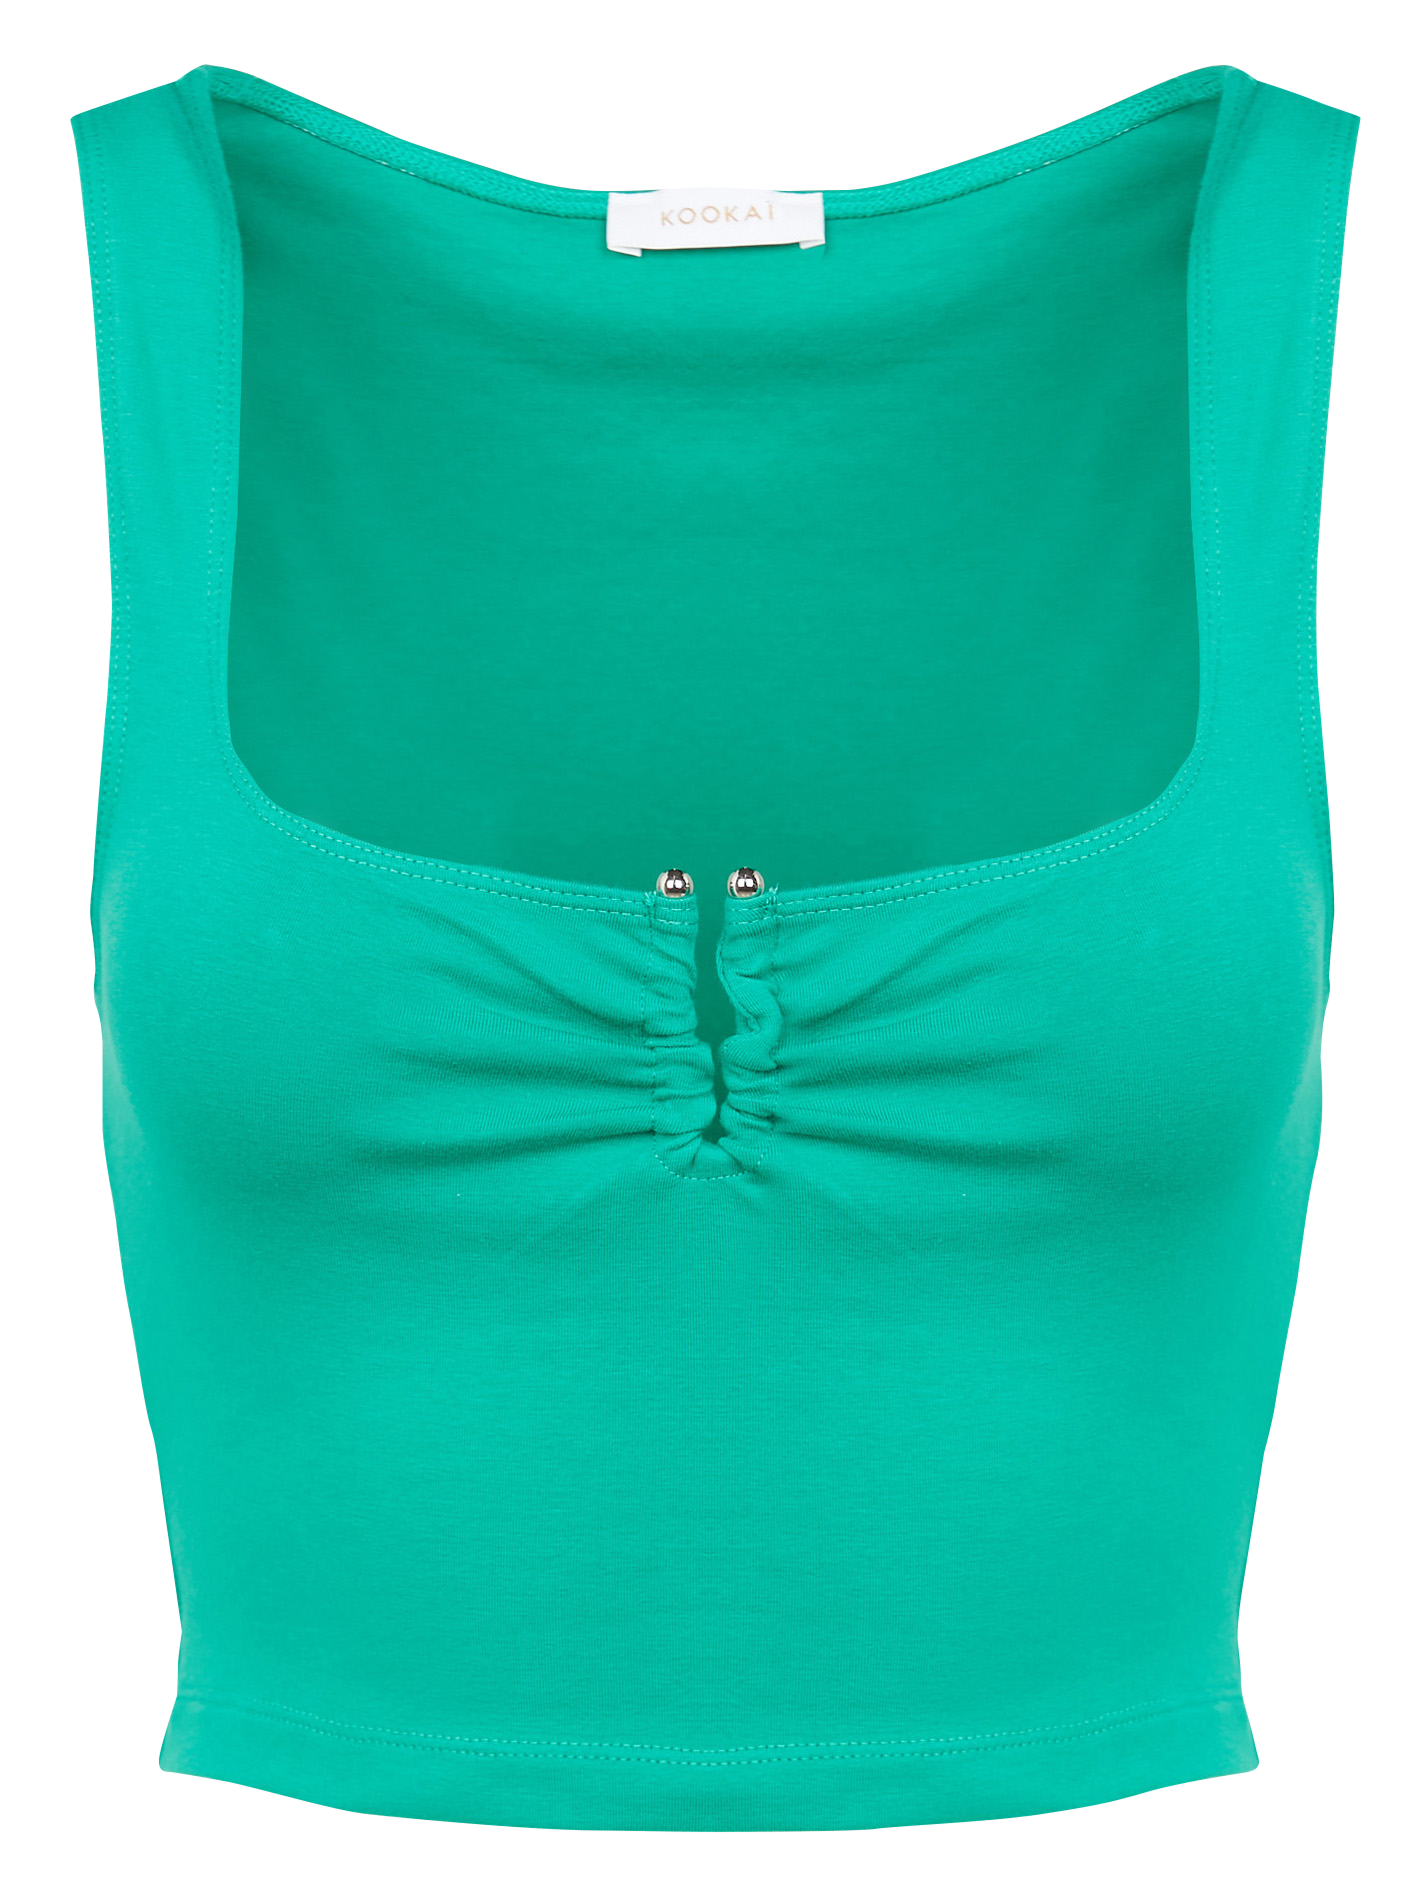 grün Hemd KOOKAI 36 Hemden Kookai Damen Damen Kleidung Kookai Damen Oberteile Kookai Damen Blusen & Hemden Kookai Damen Hemden Kookai Damen S, T1 